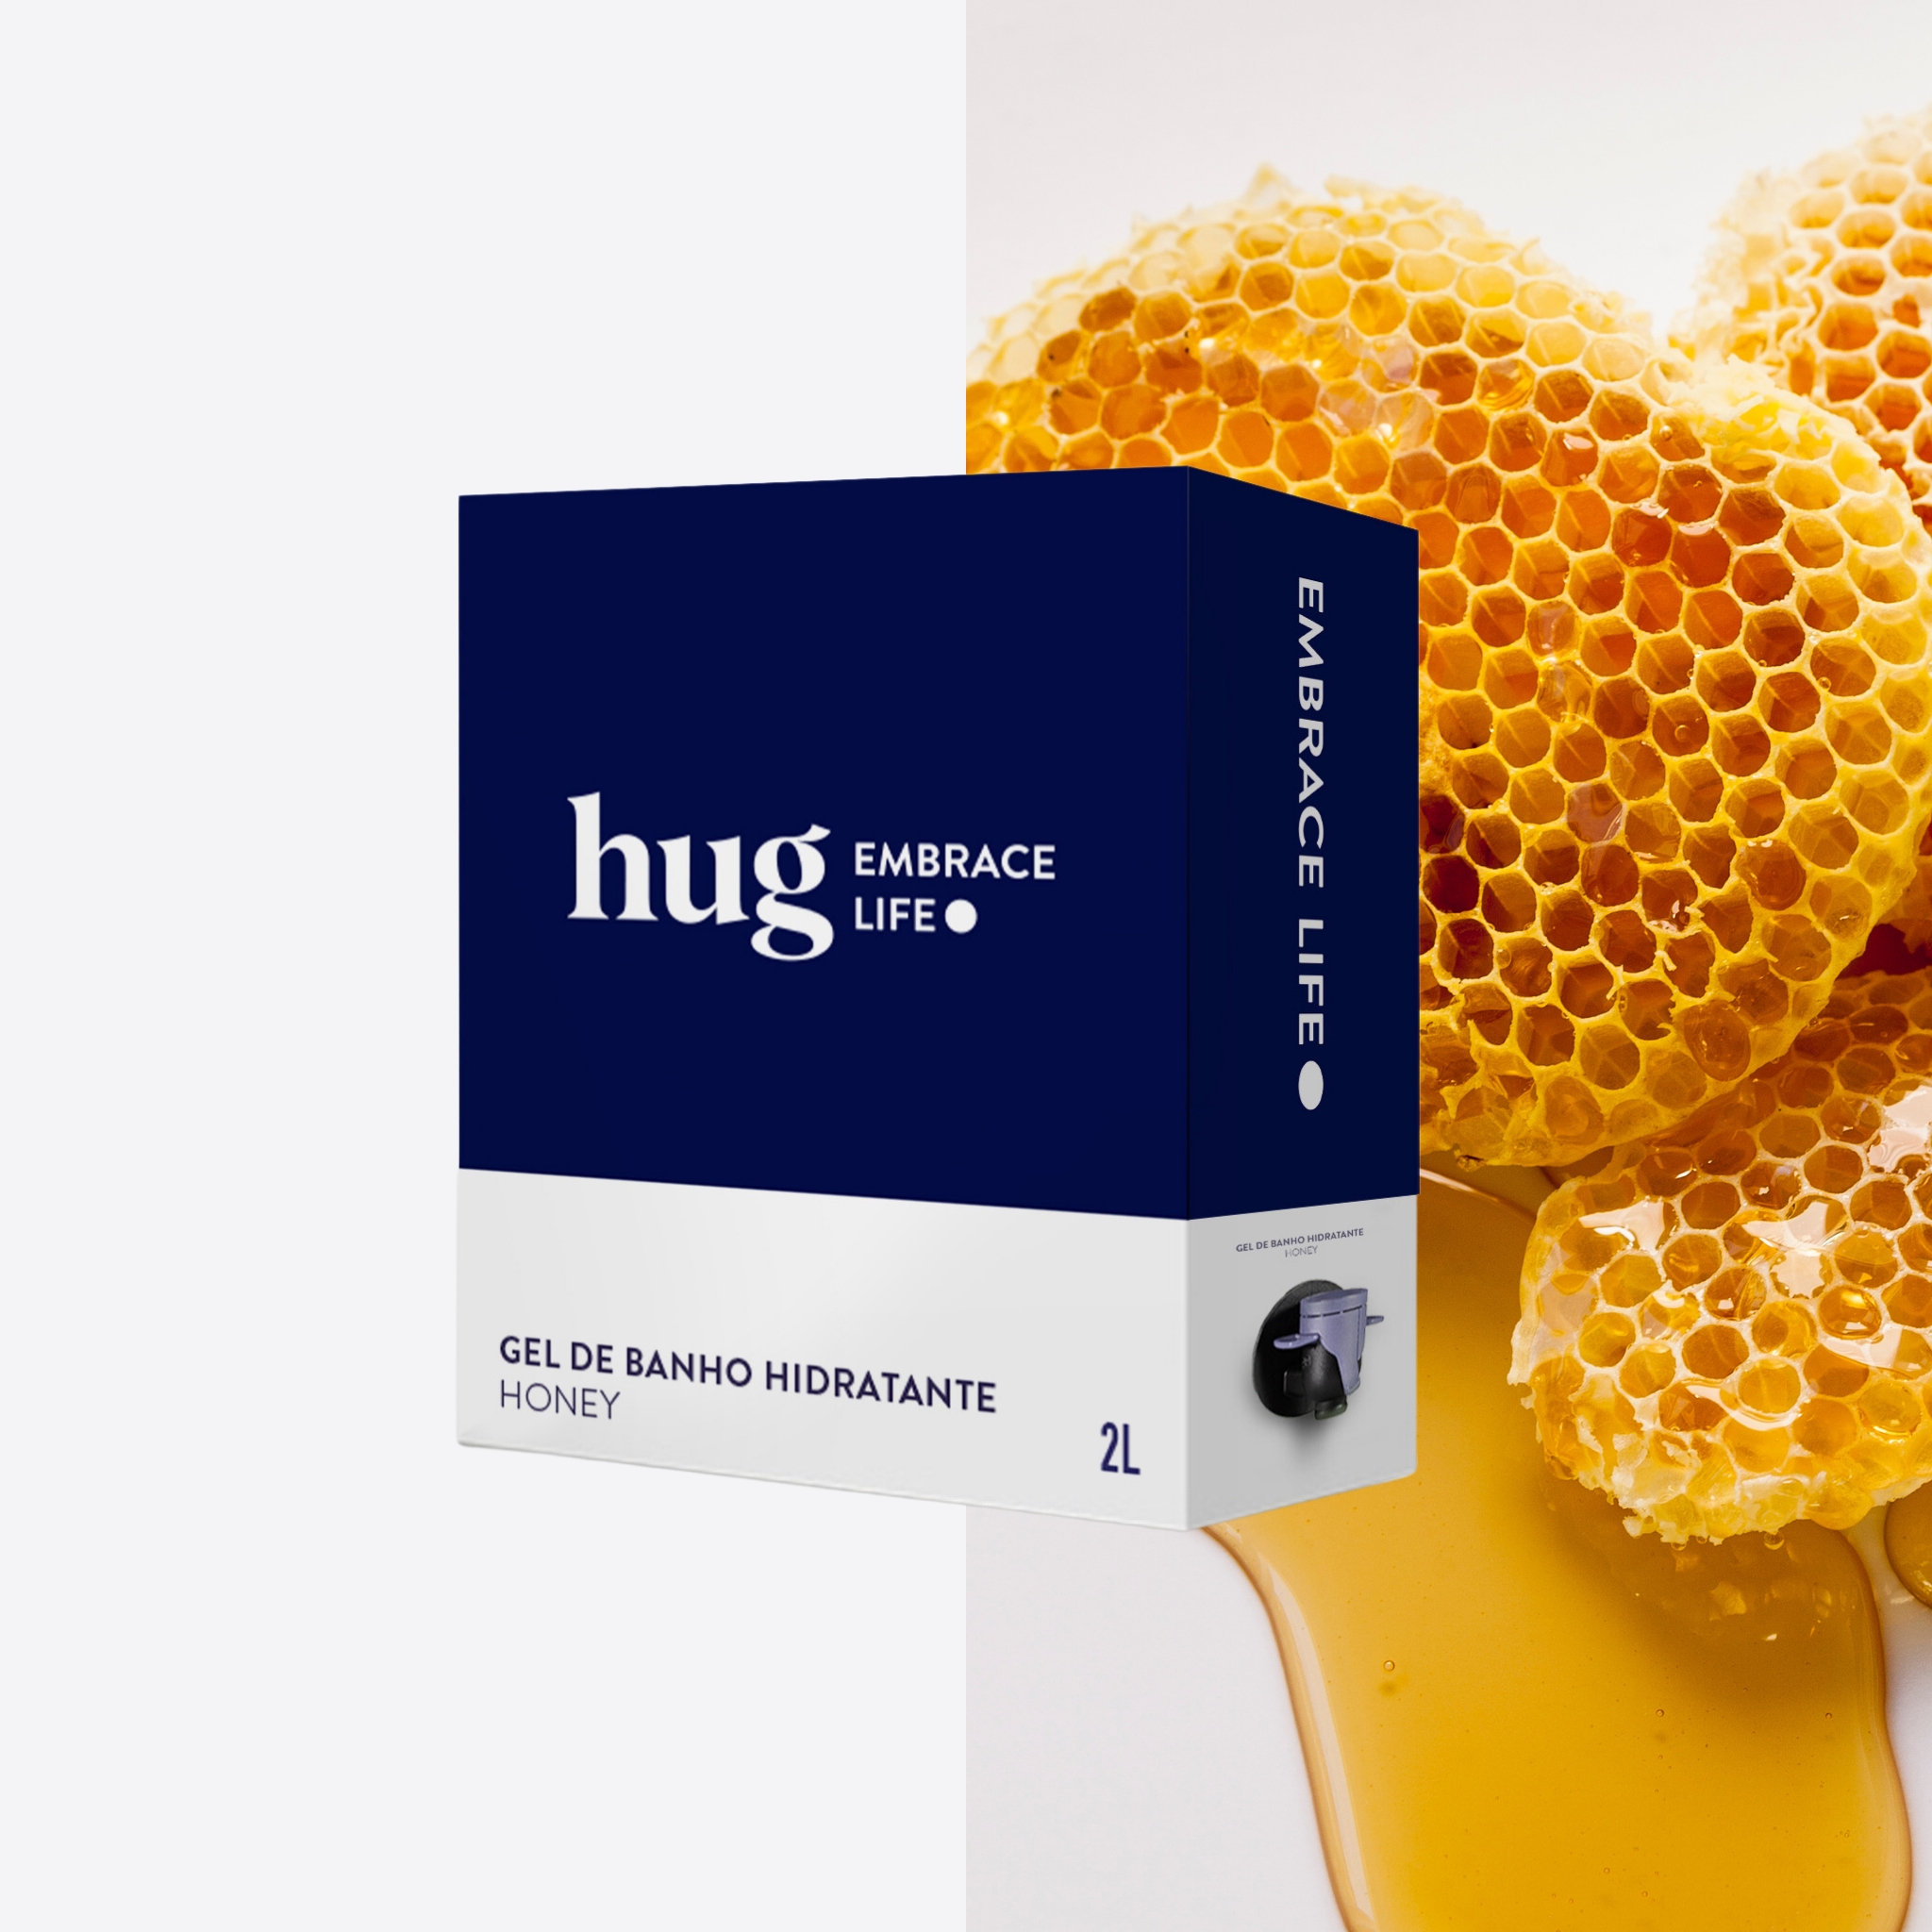 Gel de banho Ecológico Hidratante Honey 2L - HUG - Embrace Life ●